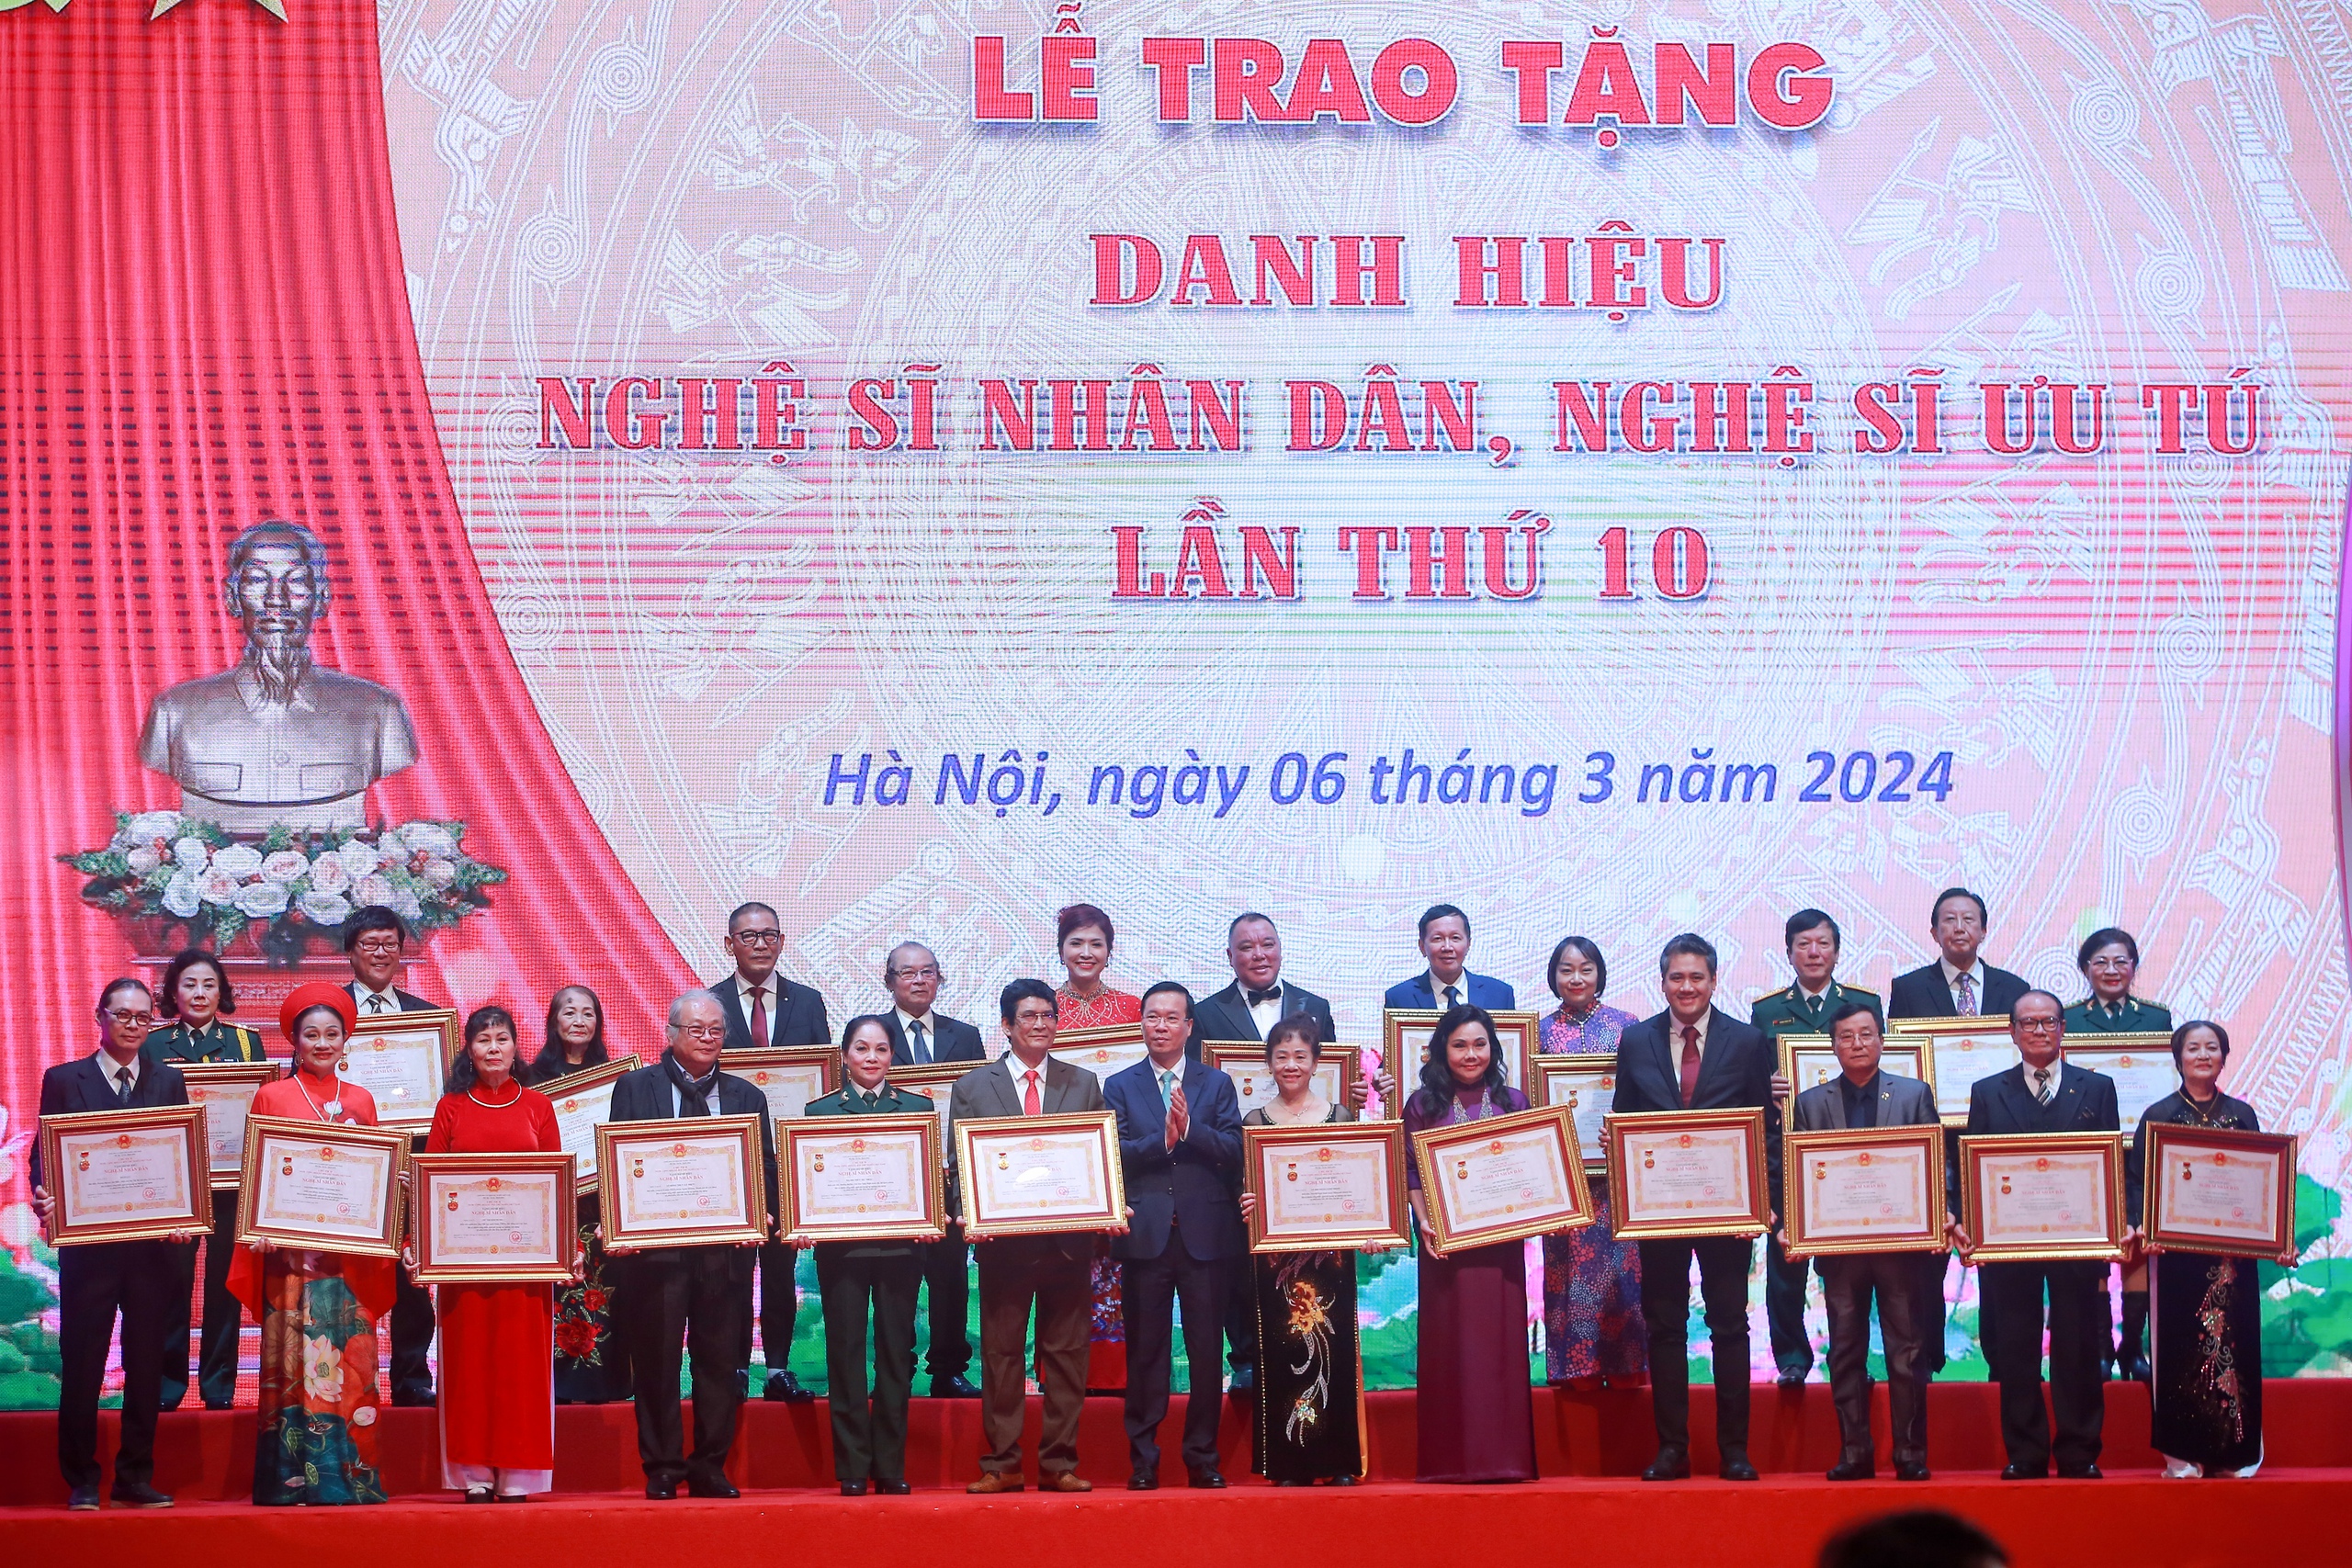 Hình ảnh Chủ tịch nước Võ Văn Thưởng trao tặng danh hiệu NSND, NSƯT lần thứ 10- Ảnh 5.